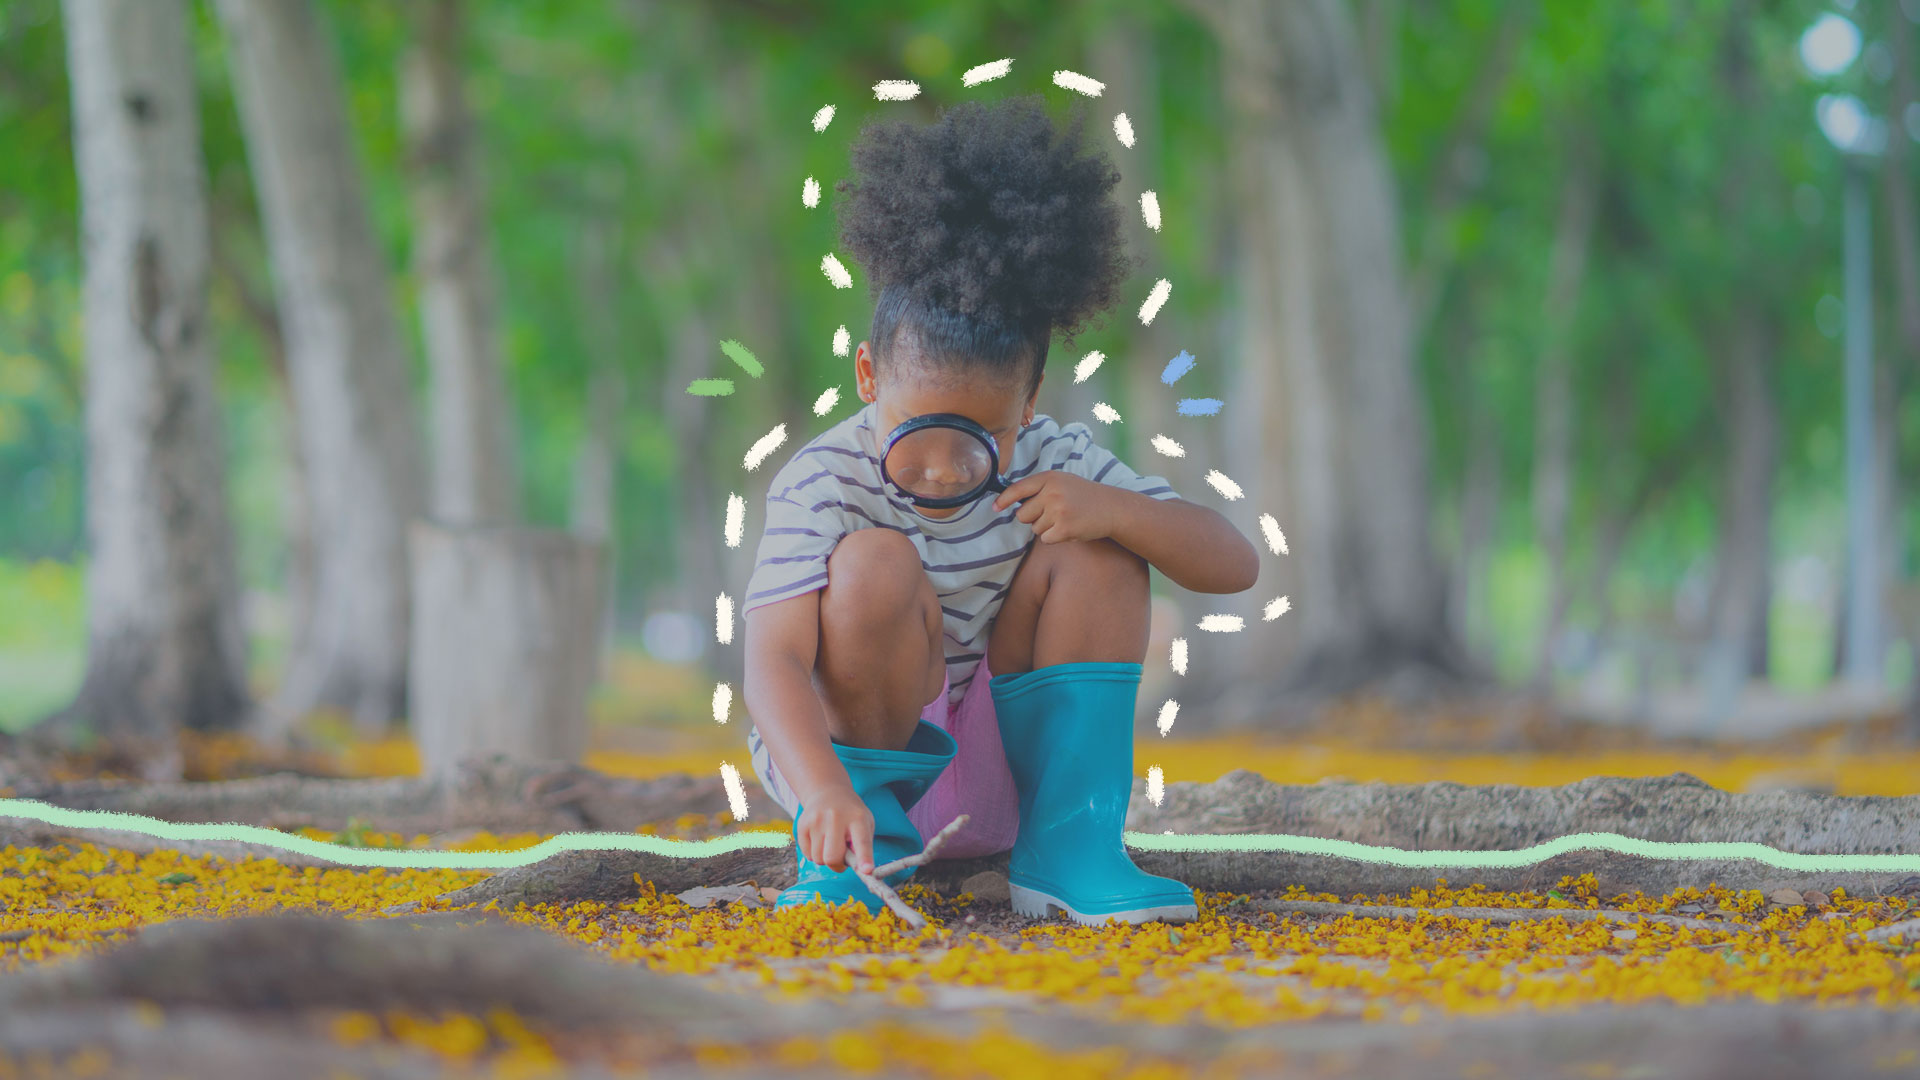 ‘Jardim das brincadeiras’: o brincar que começa no quintal: na foto, uma menina negra olha para um graveto com uma lupa. Ela está agachada em um espaço aberto com diversas árvores e verde. A imagem possui intervenções de rabiscos coloridos.